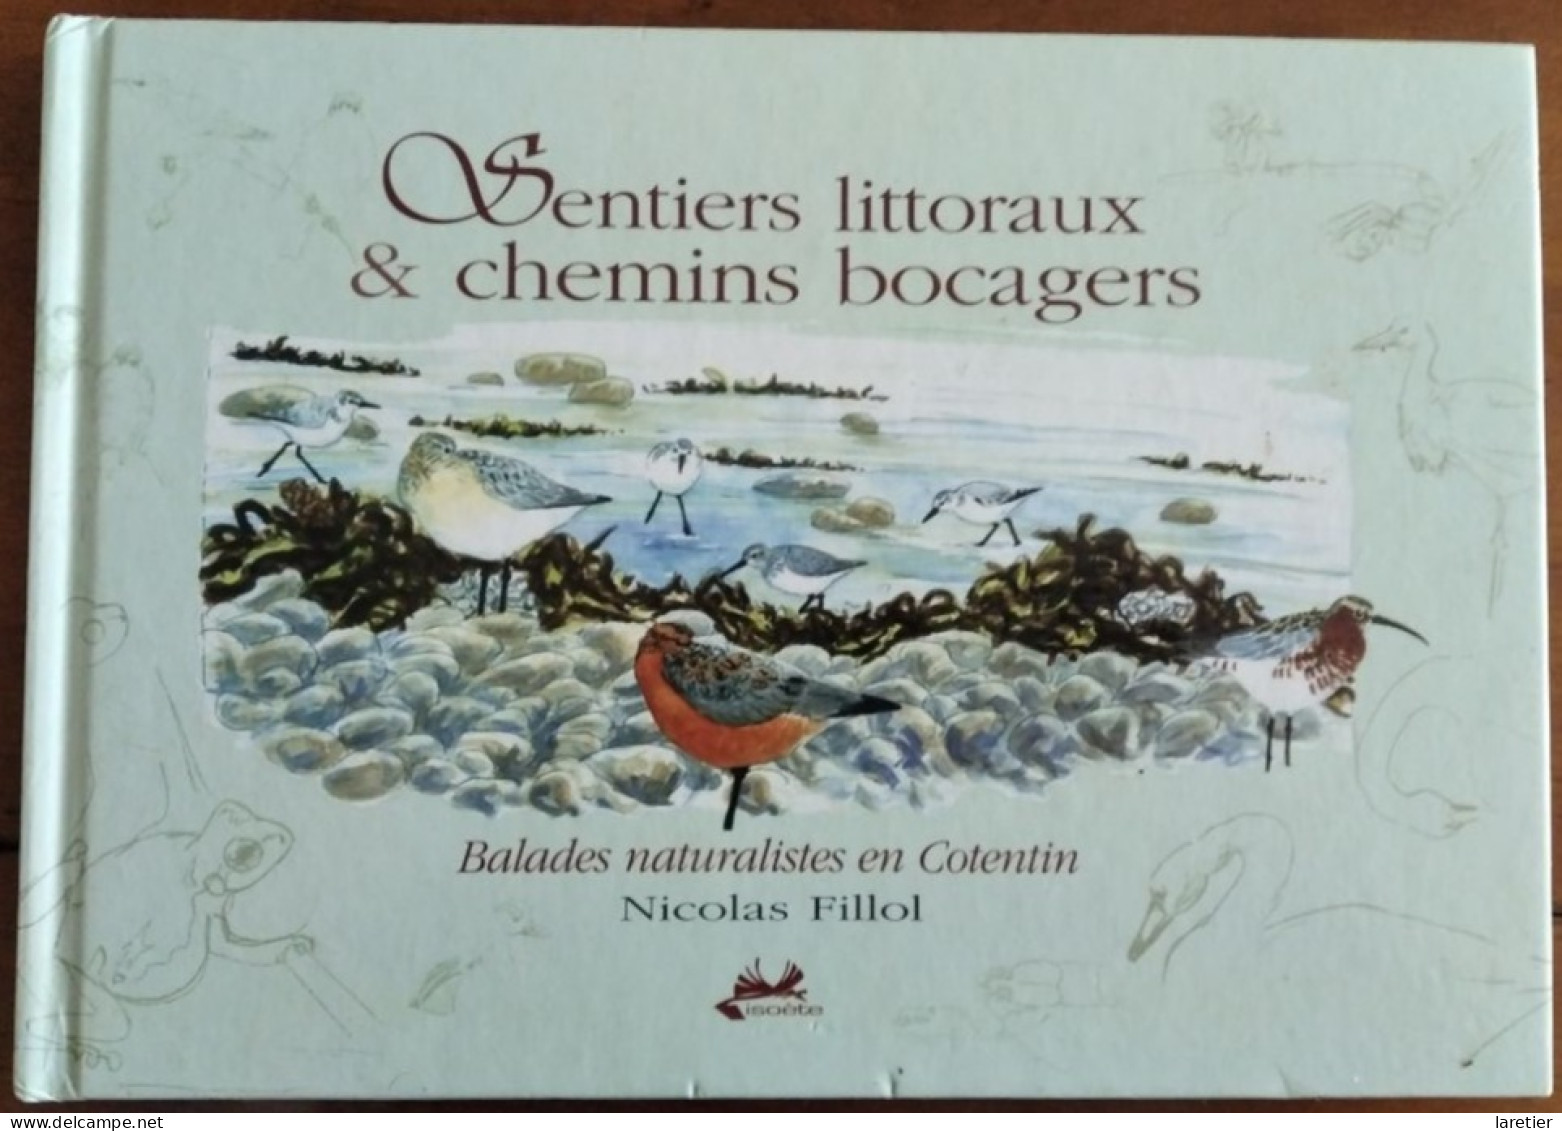 Sentiers Littoraux Et Chemins Bocagers - Balades Naturalistes En Cotentin - Nicolas Fillol - Manche (50) - Normandie - Normandie